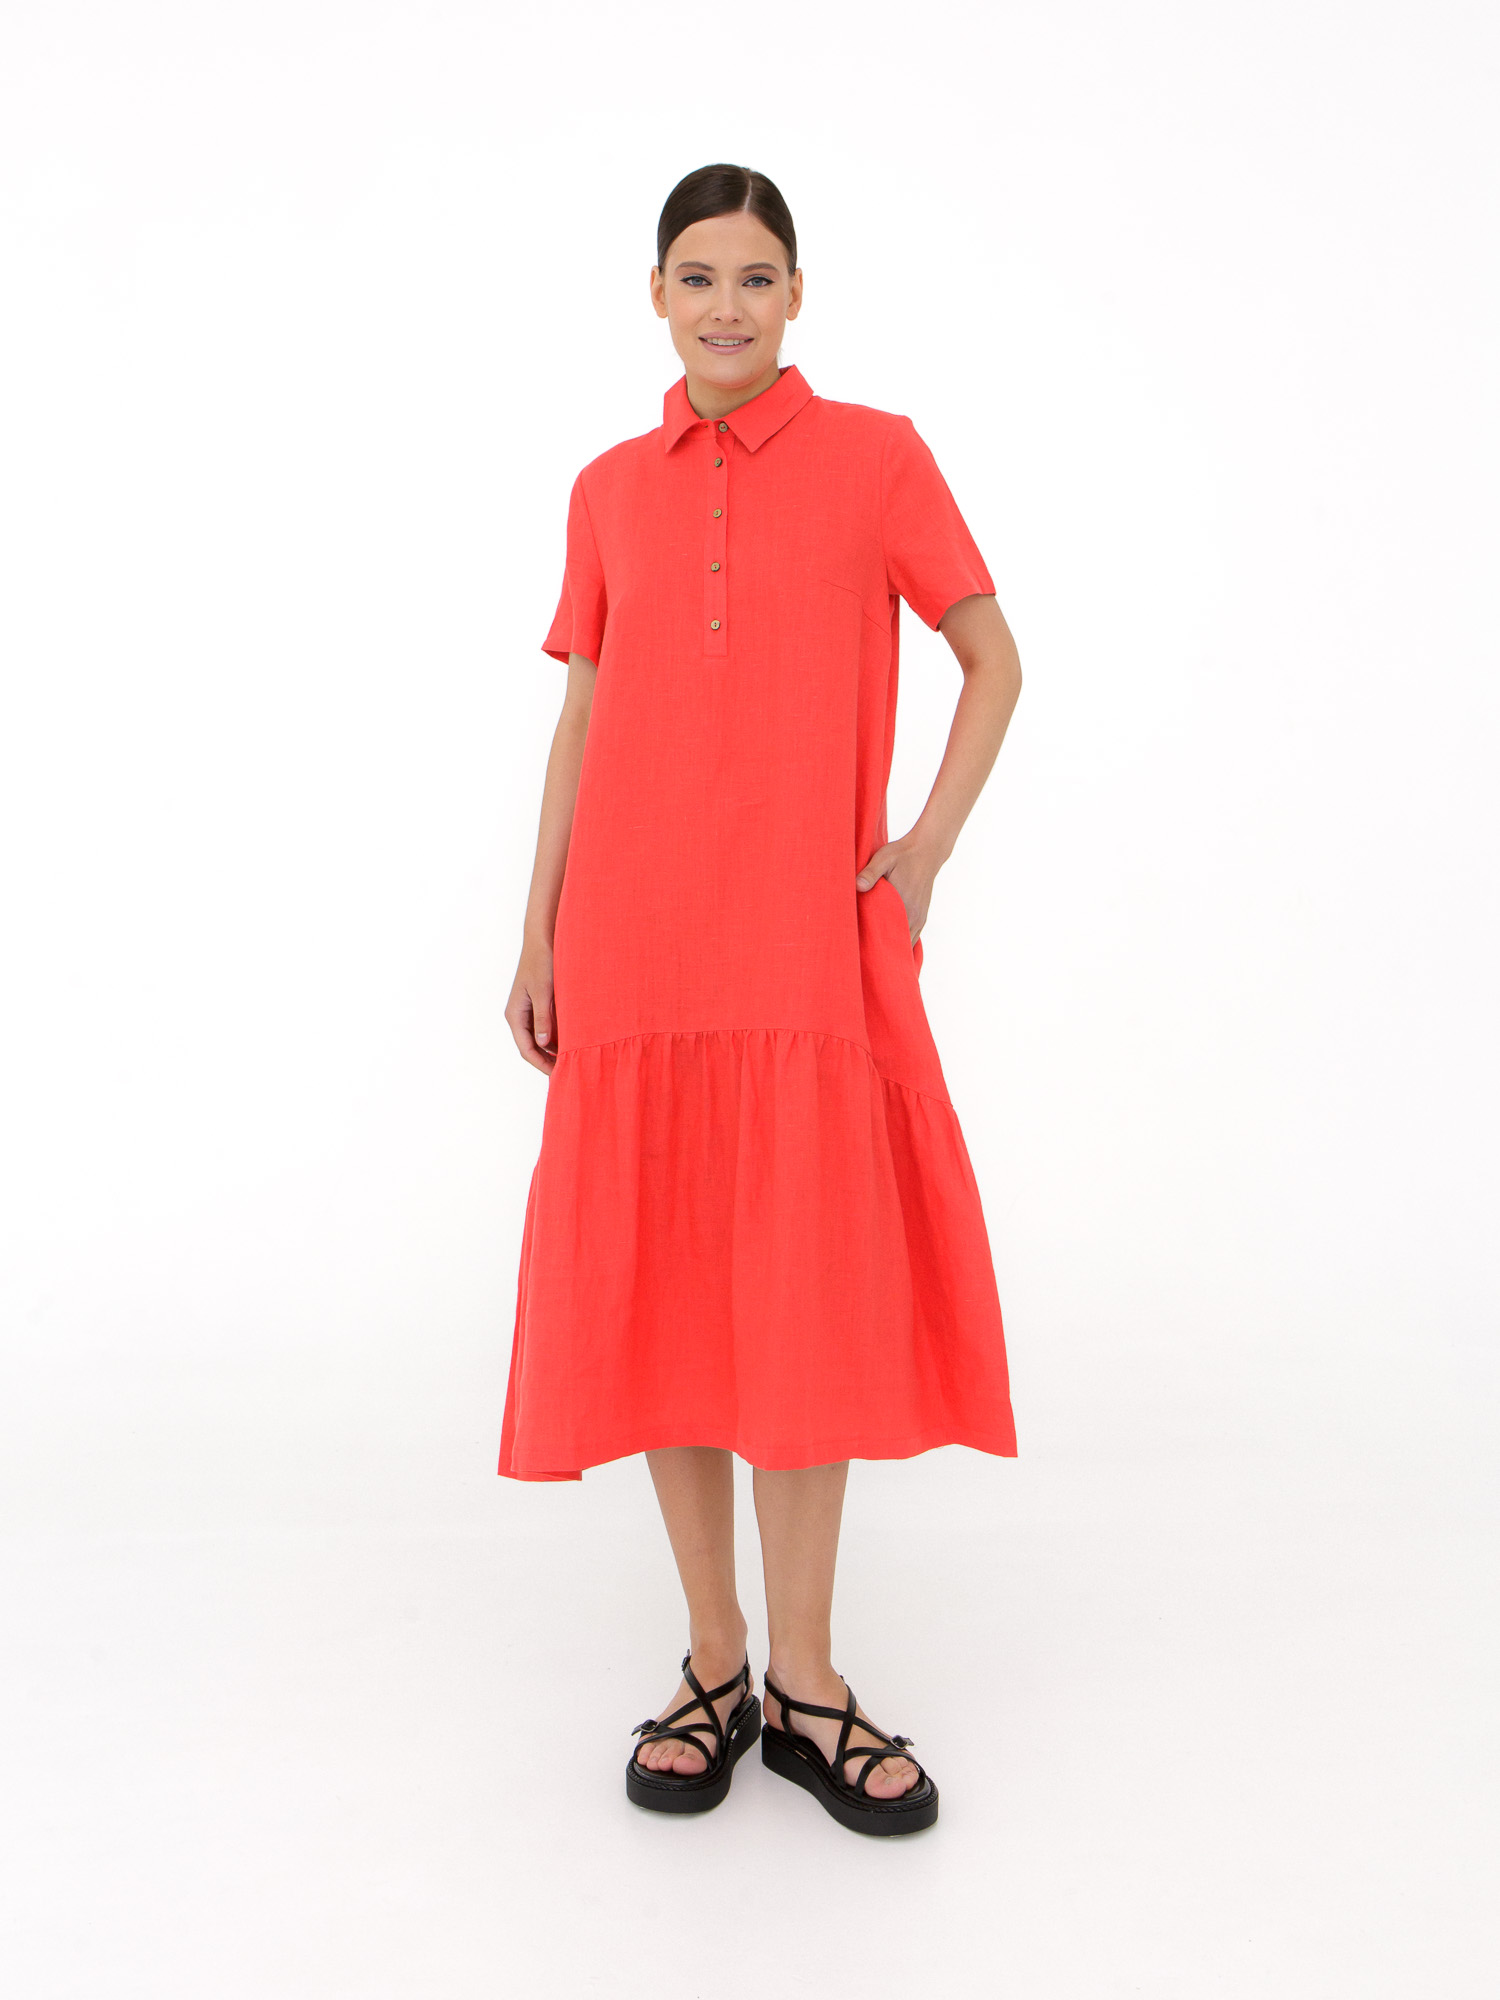 Платье женское КЛ-7521А-ИЛ23 коралловое 42 ELECTRA STYLE, цвет коралловый, размер 42